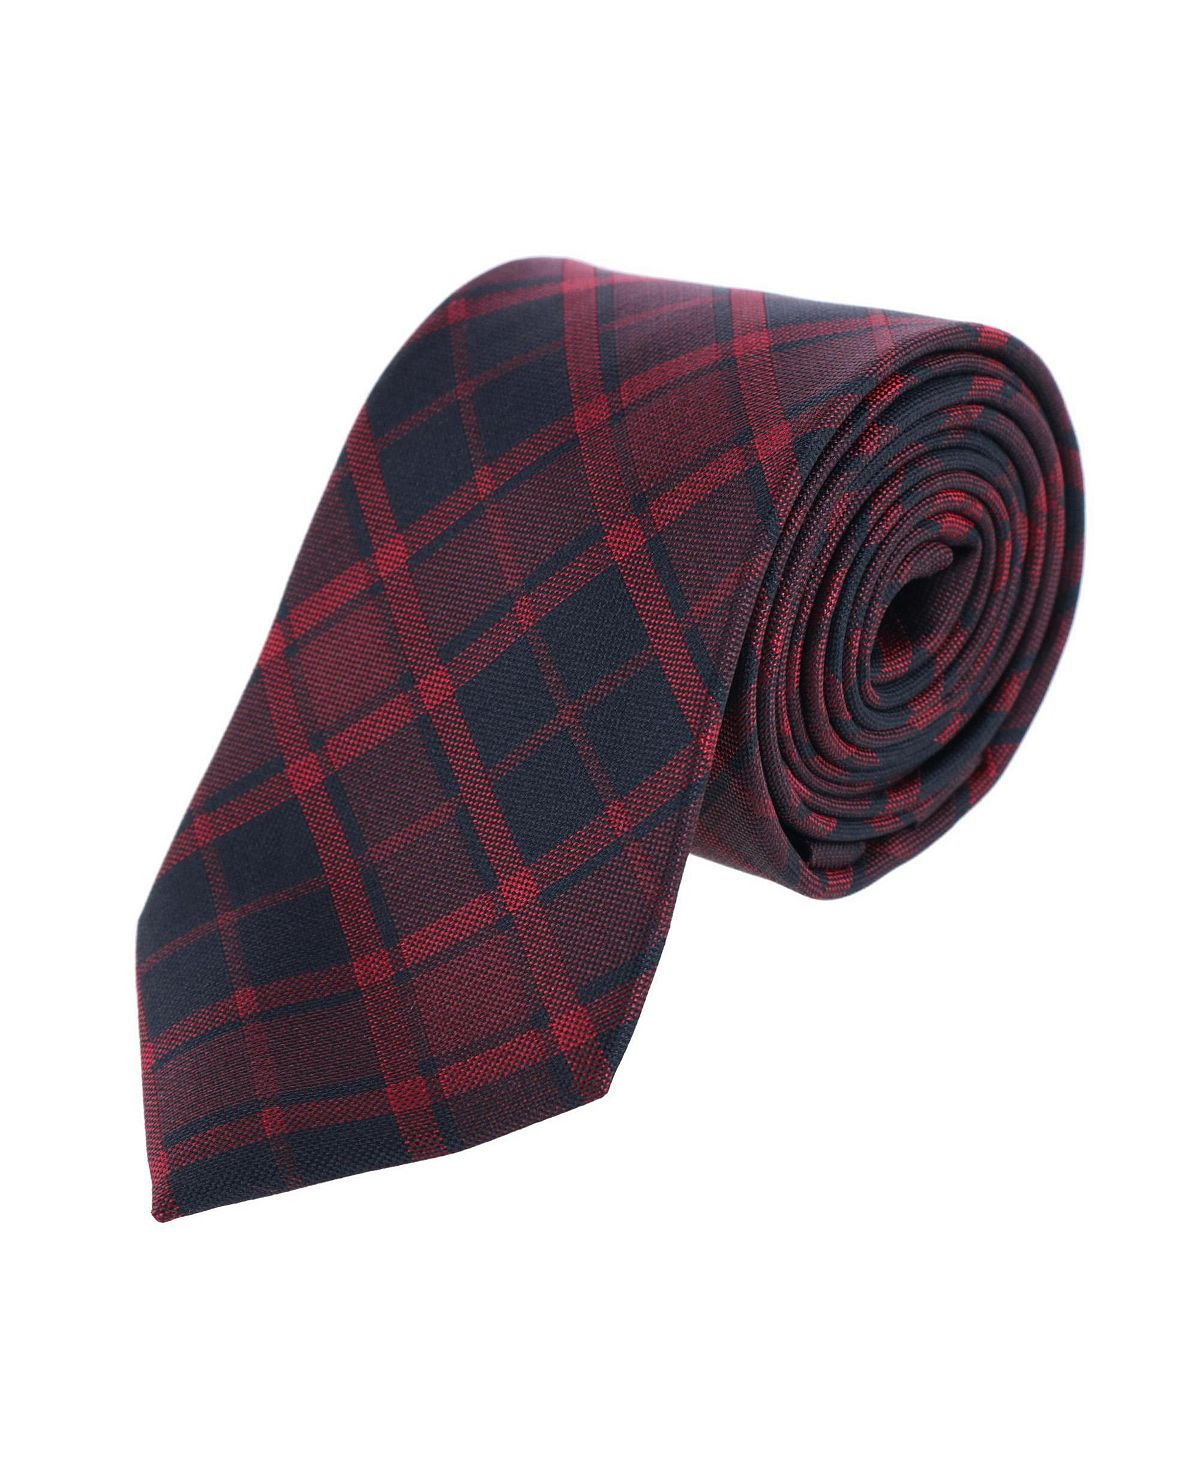 Красный шелковый галстук в клетку Kincade Blackwatch TRAFALGAR галстук классики в клетку красный синий